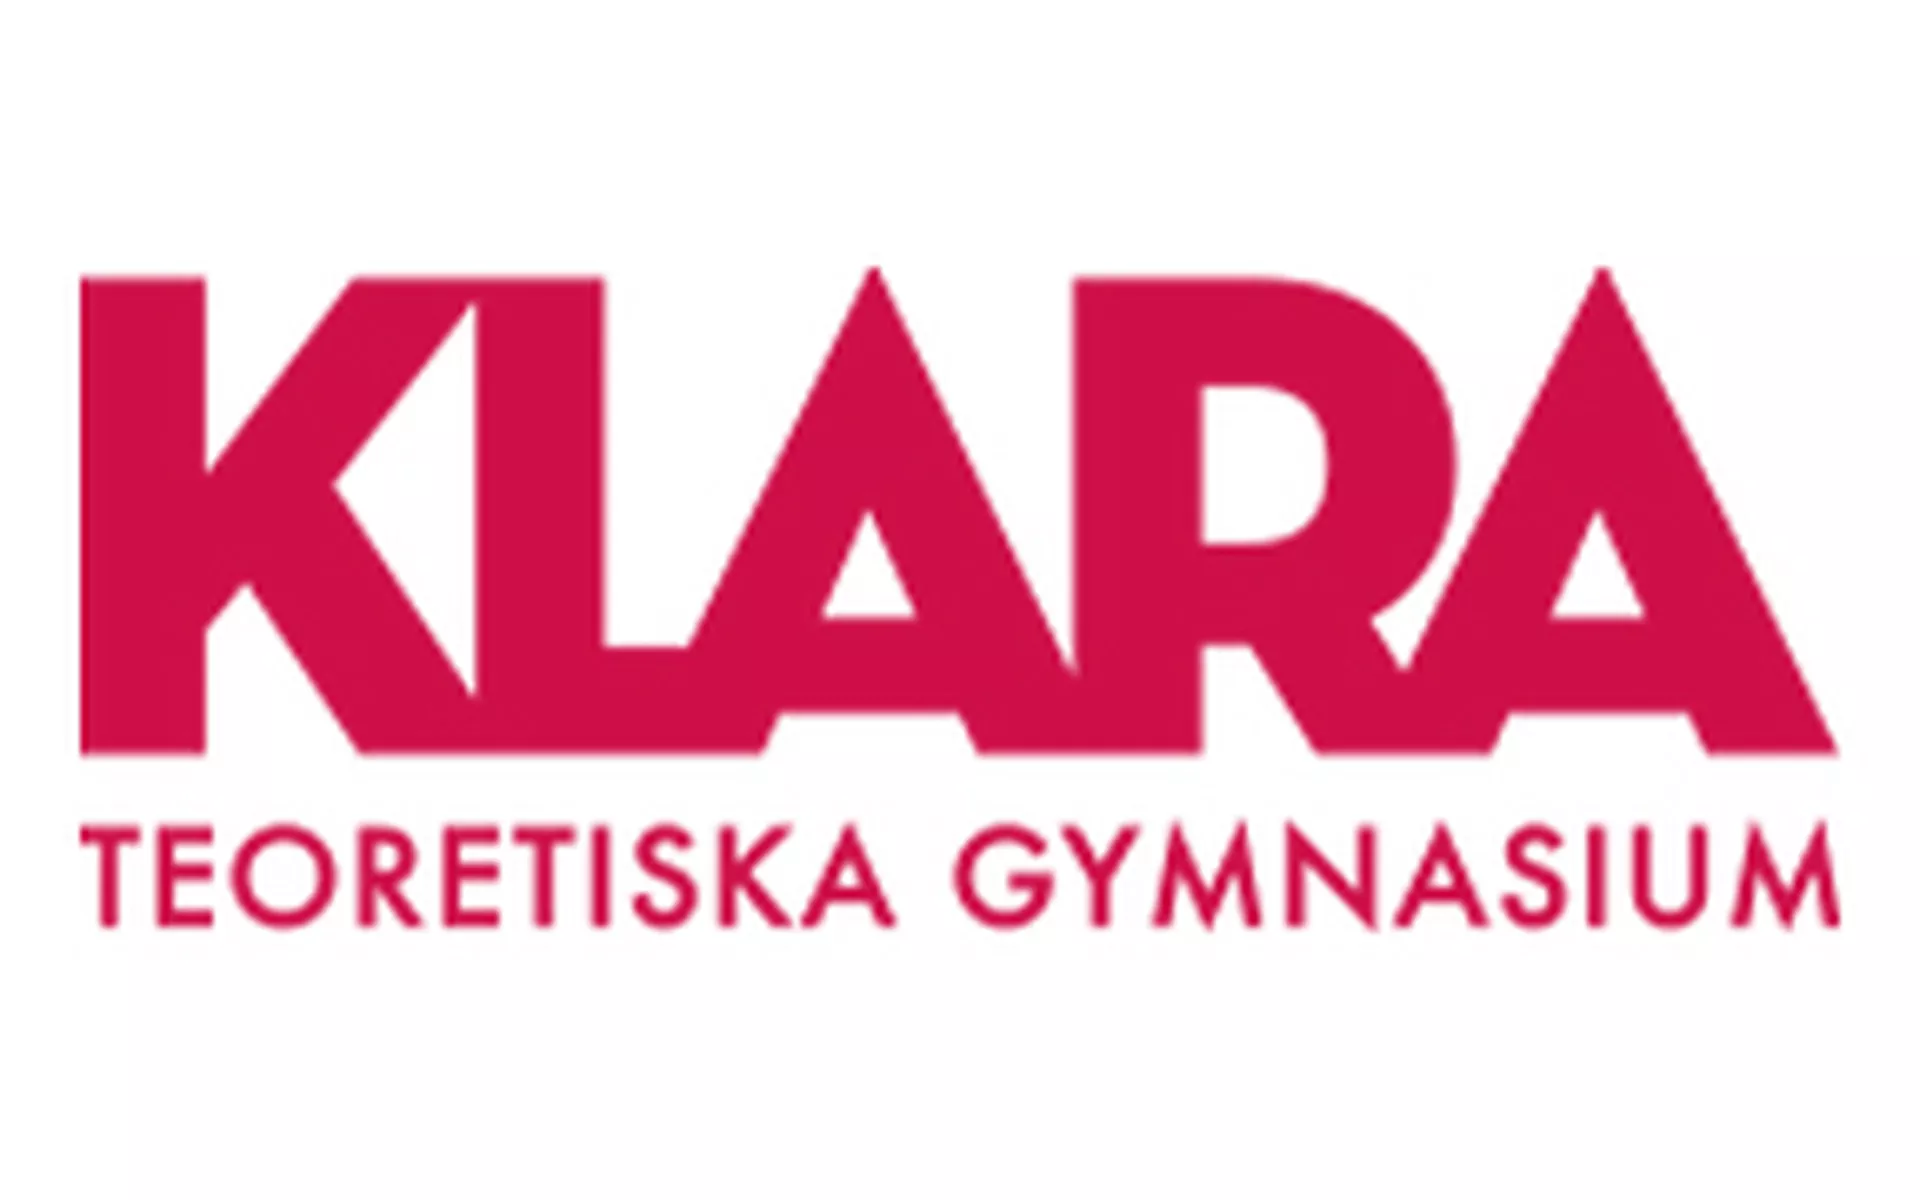 Klara Teoretiska Gymnasium Linköping